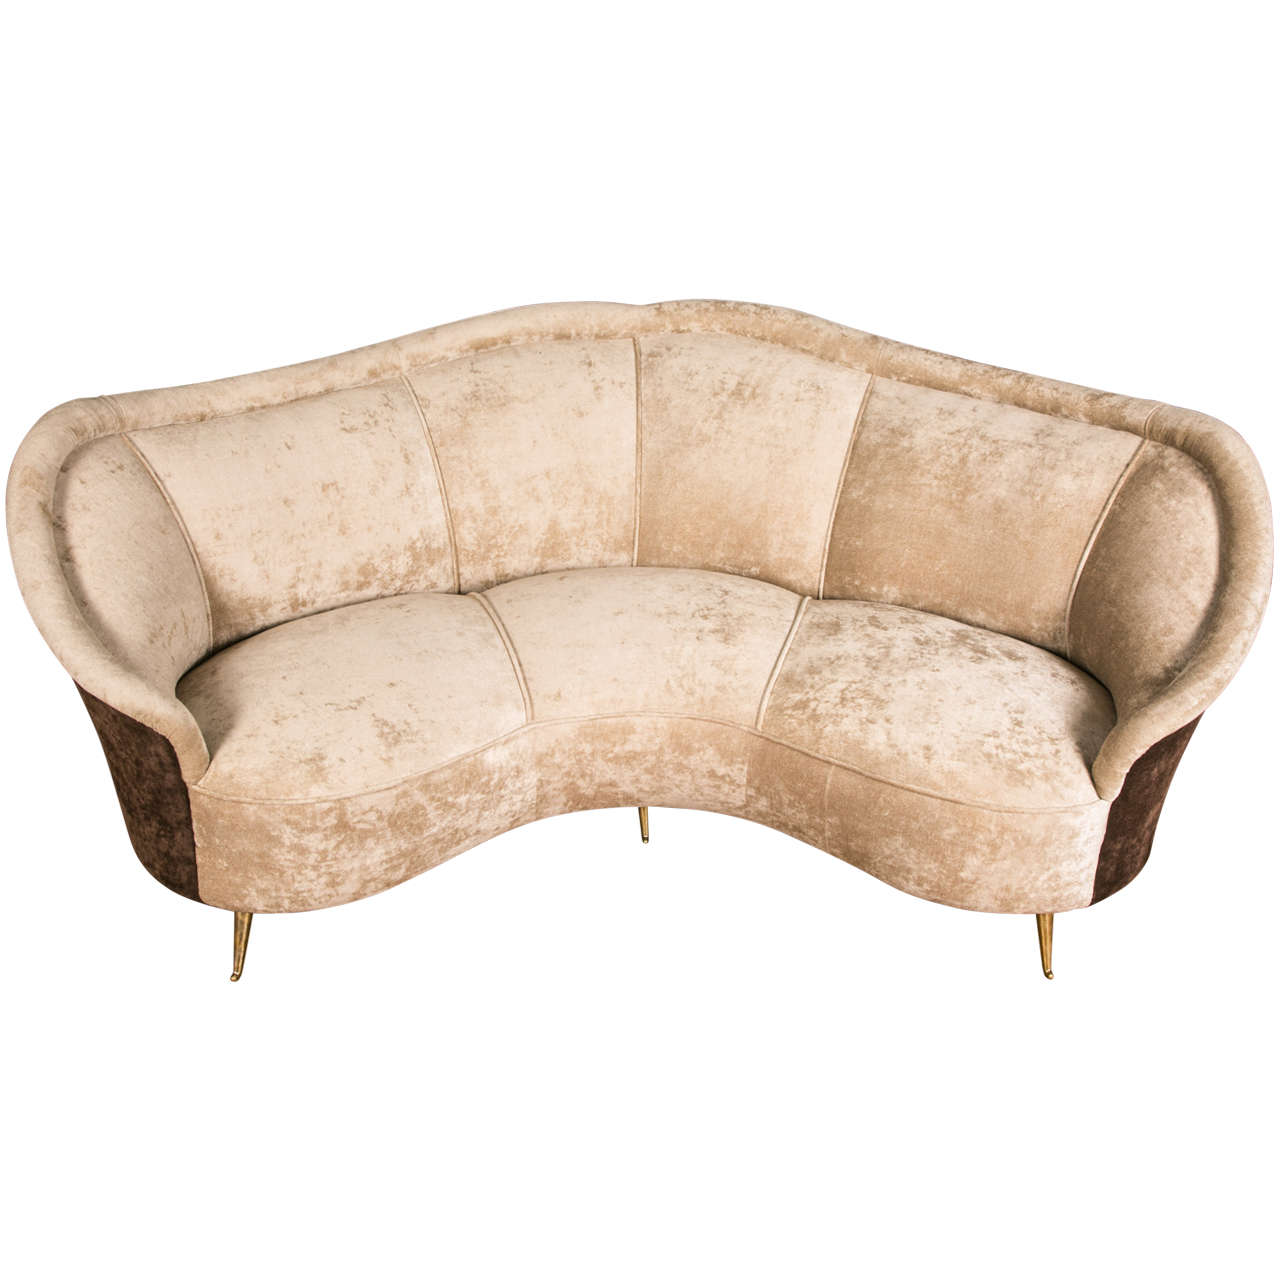 Elegant curved sofa